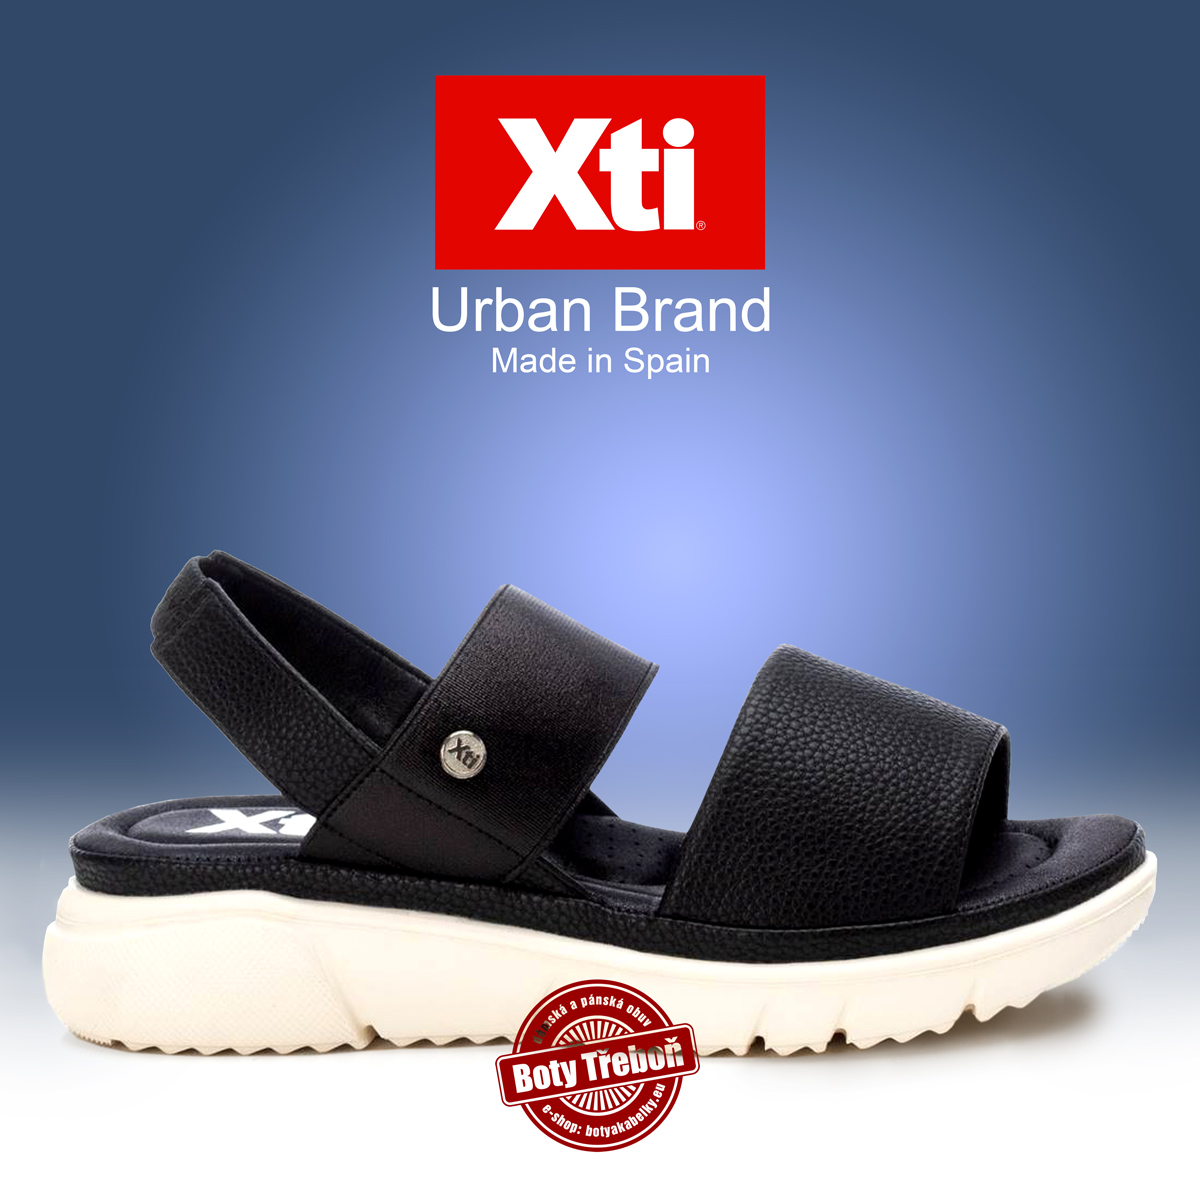 1 XTI - dámské sandály, černé/bílá